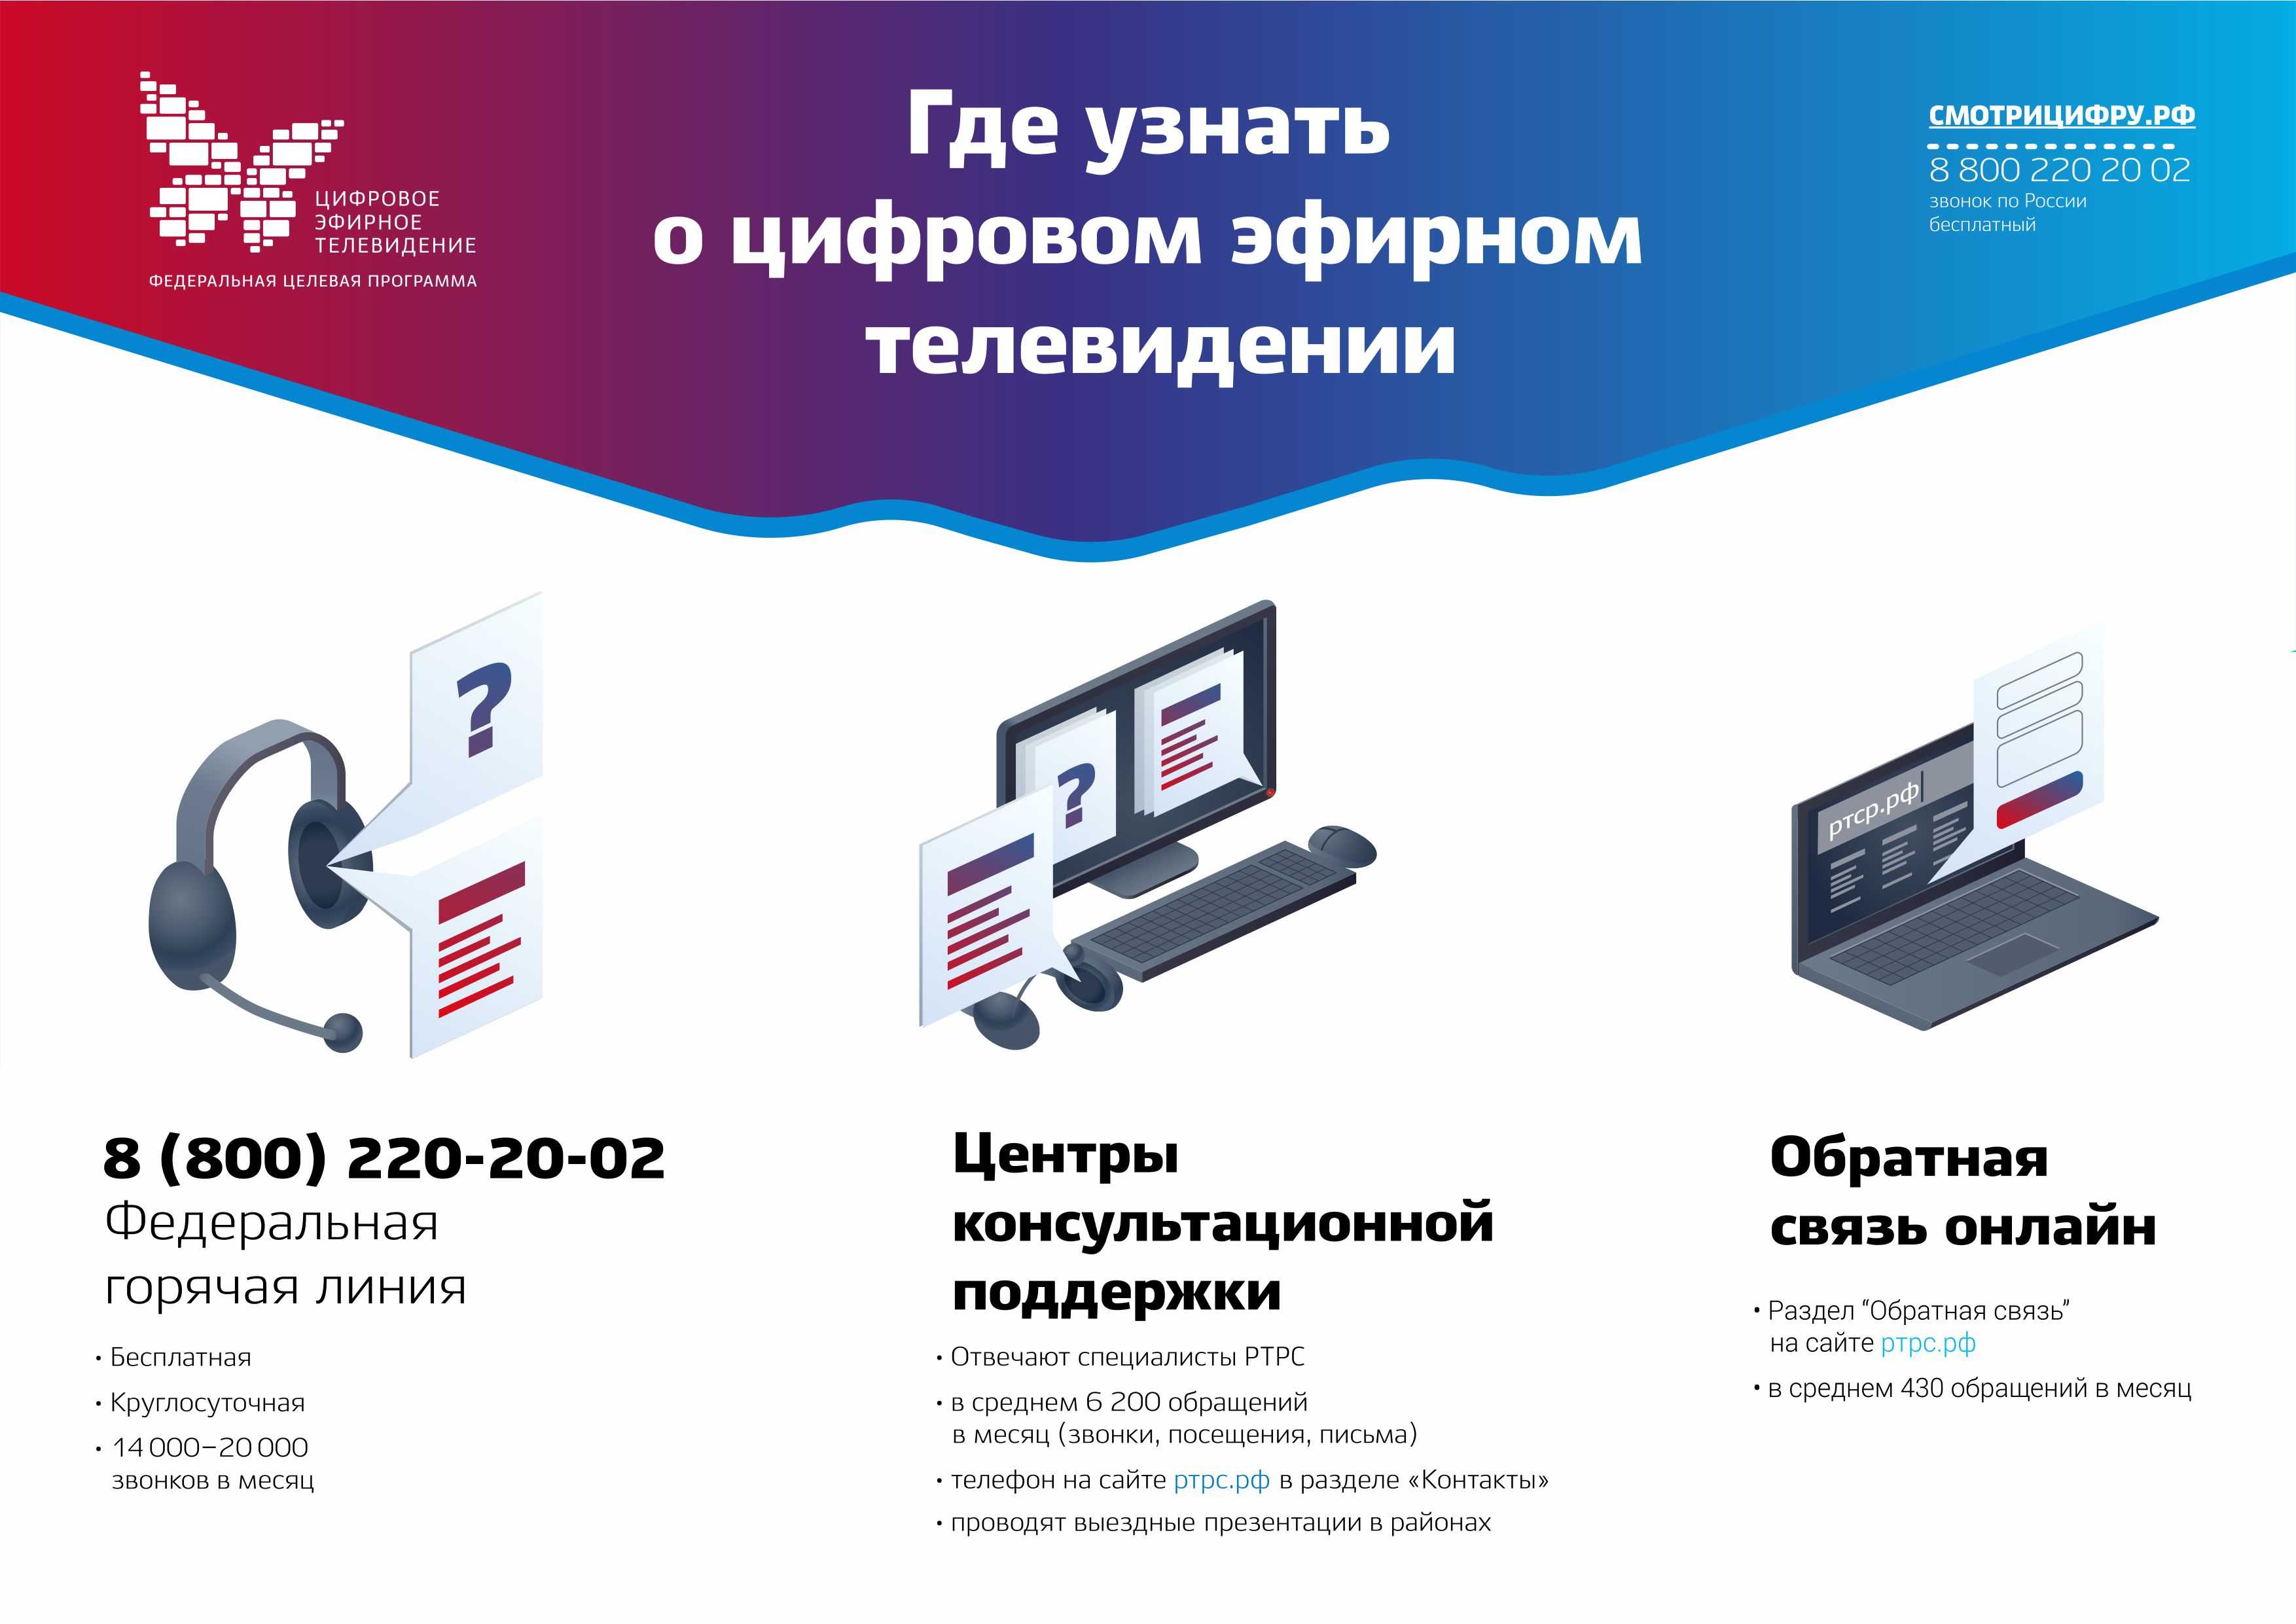 Как перейти на цифровое телевидение в 2019 году в москве: инструкция, как самостоятельно подключиться для просмотра цтв, что нужно сделать, чтобы настроить переход?